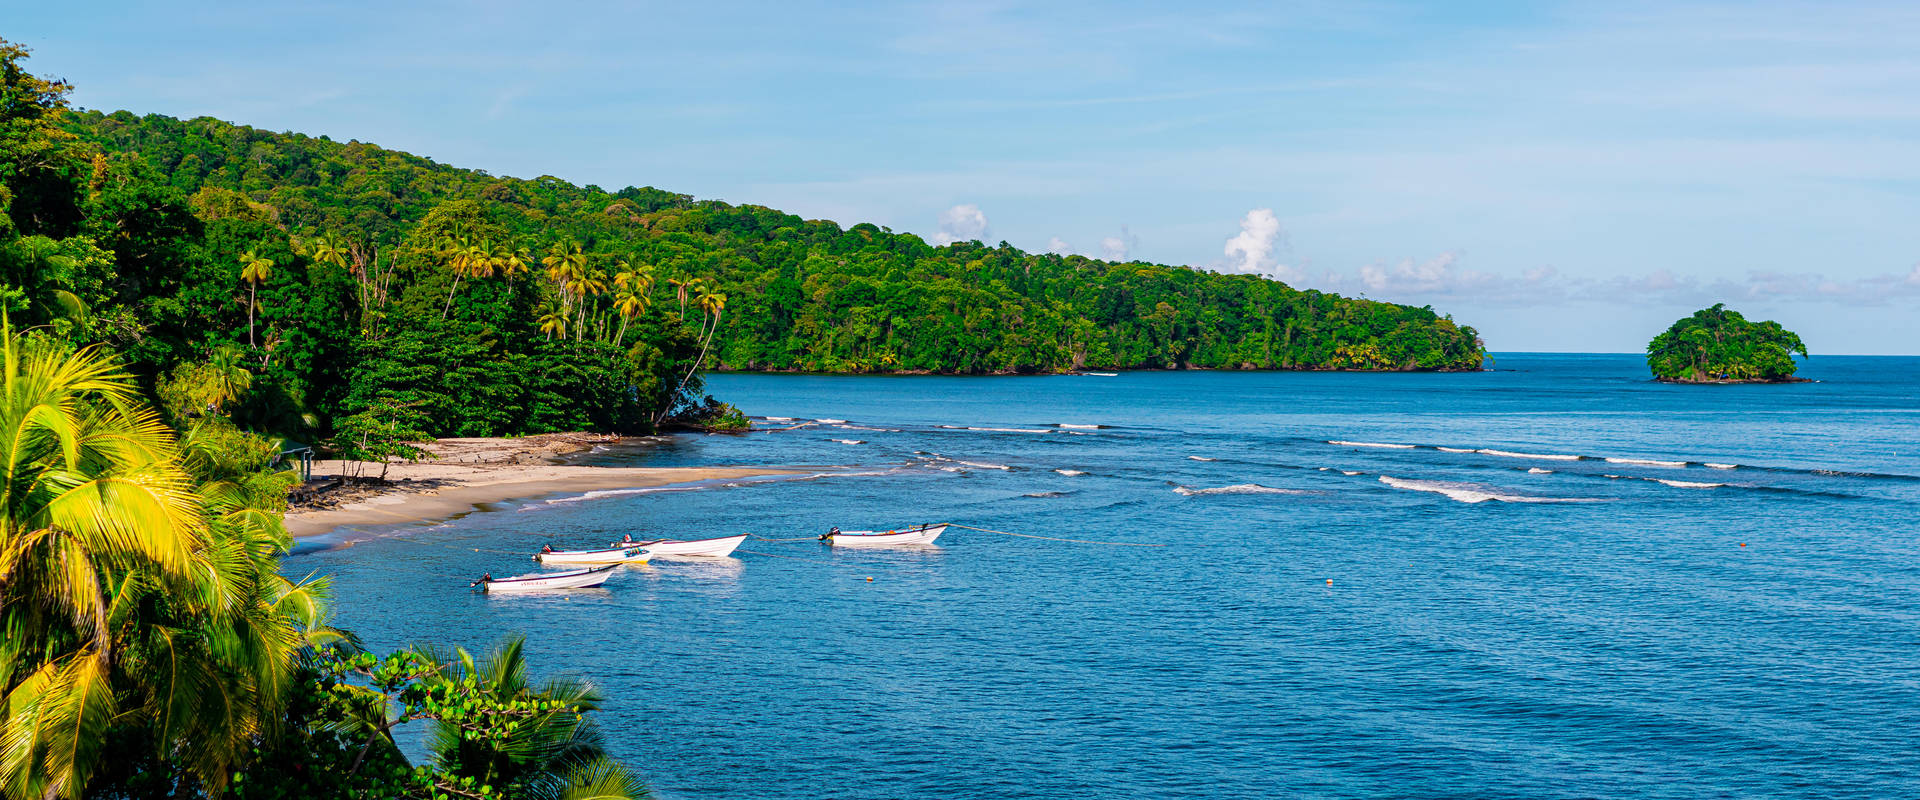 Trinidad And Tobago Salybia Bay scenen: Disse smukke streger af farverig Caribisk blå vil helt sikkert trække øjet. Wallpaper